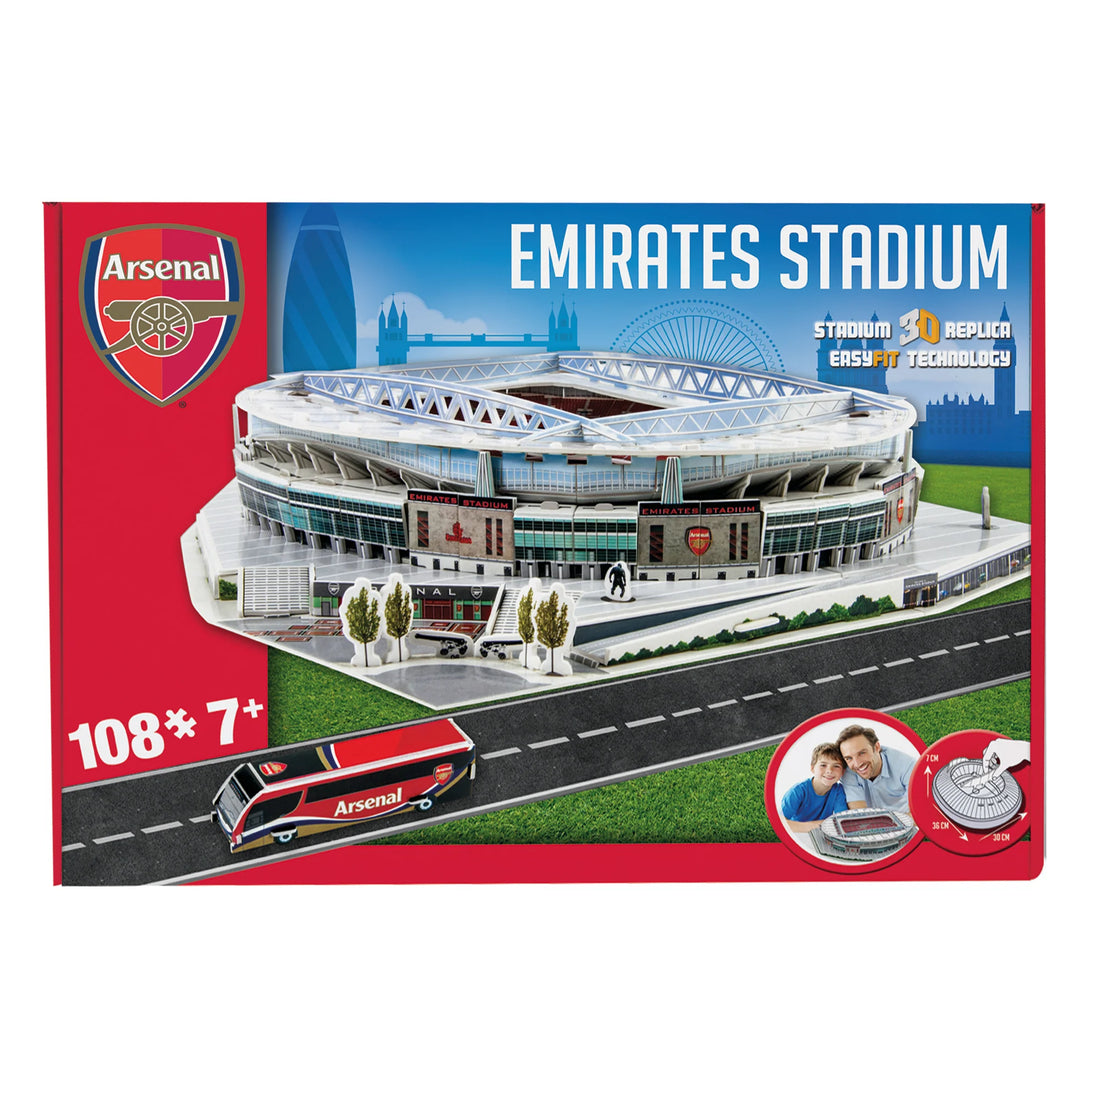 Just Arrived: Arsenal Emirates Stadium 3D Puzzle